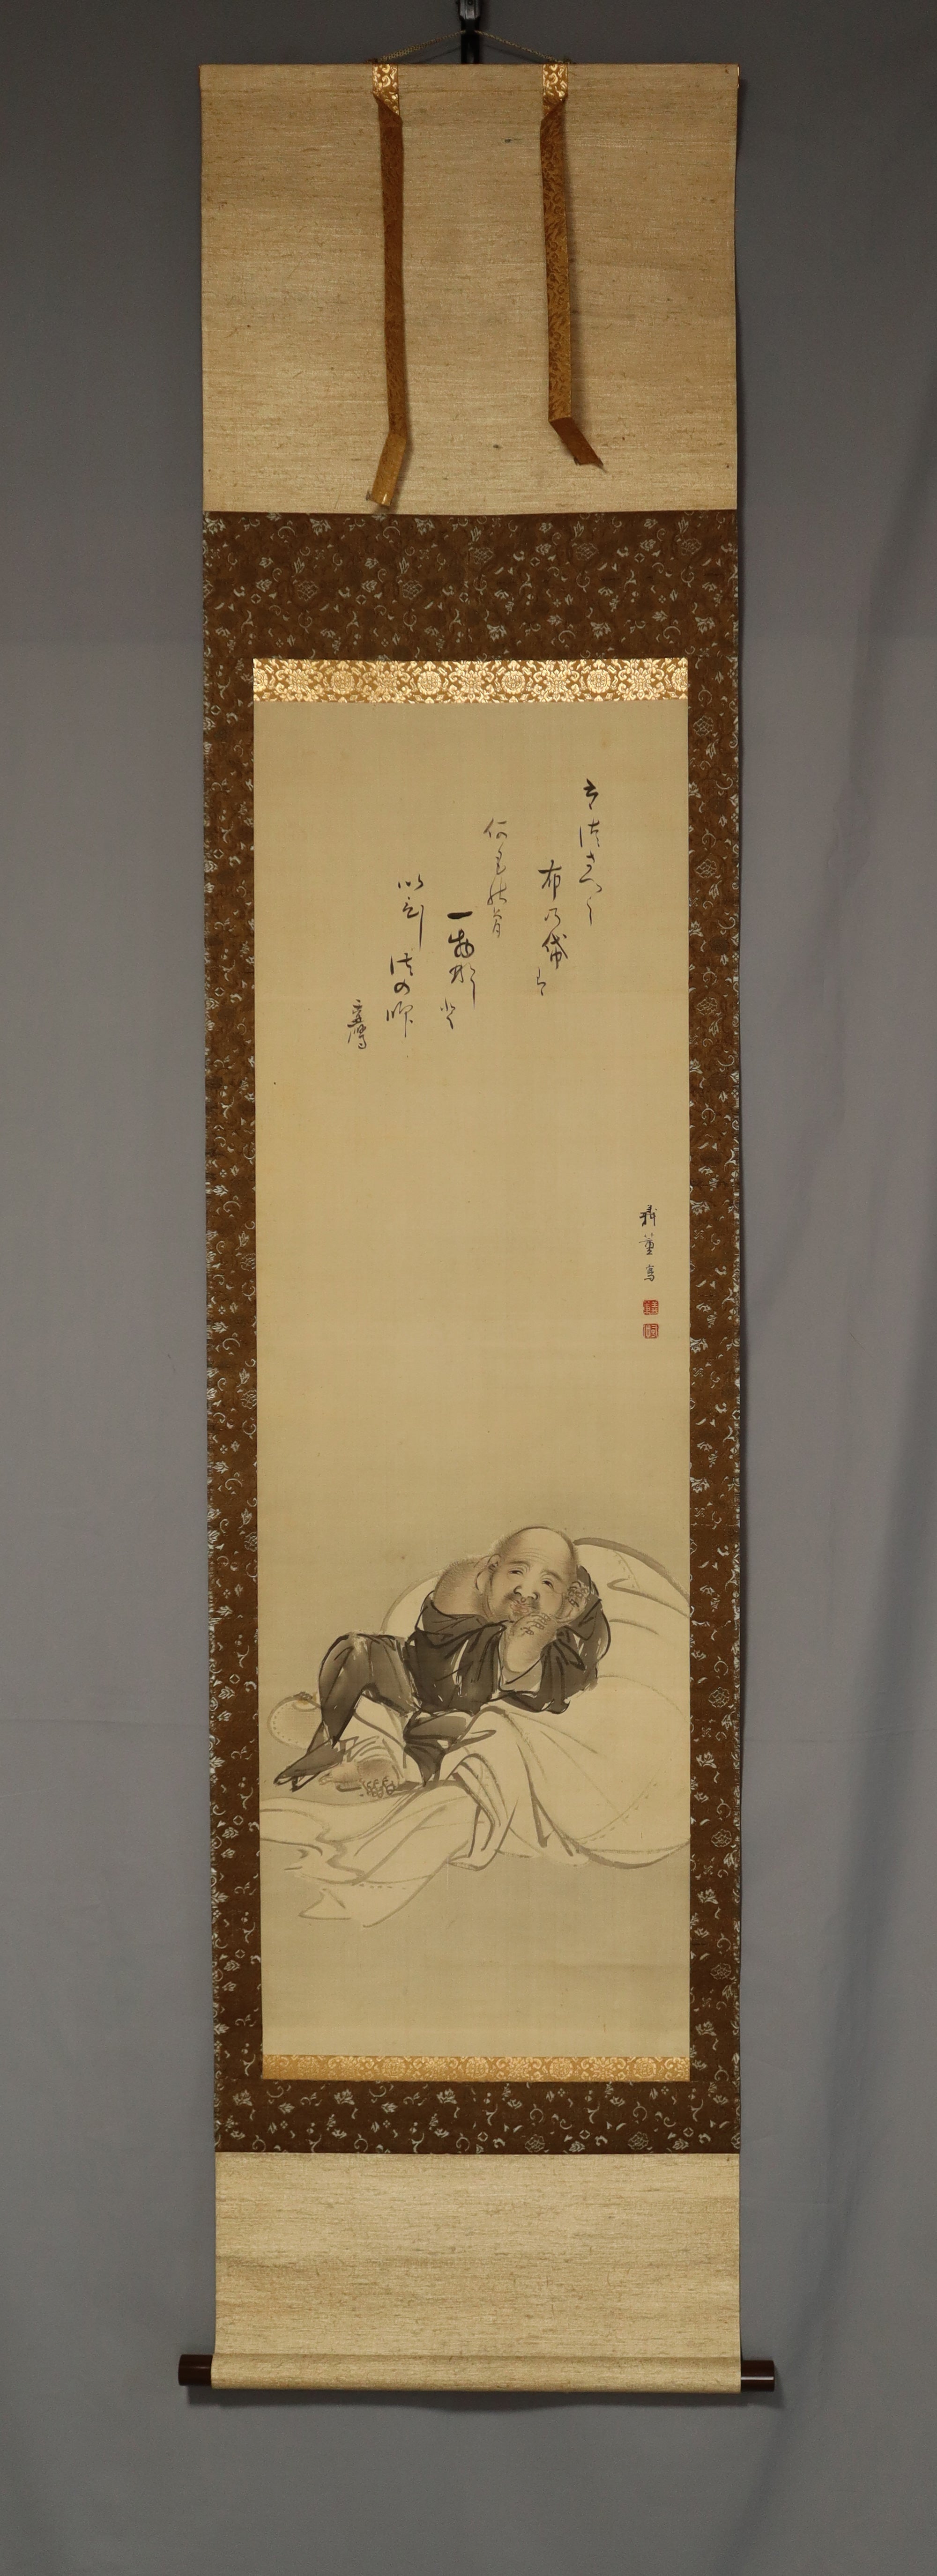 Shibata Gito (1780-1819), Kamono Suetaka (1754-1841) Collaborazione 